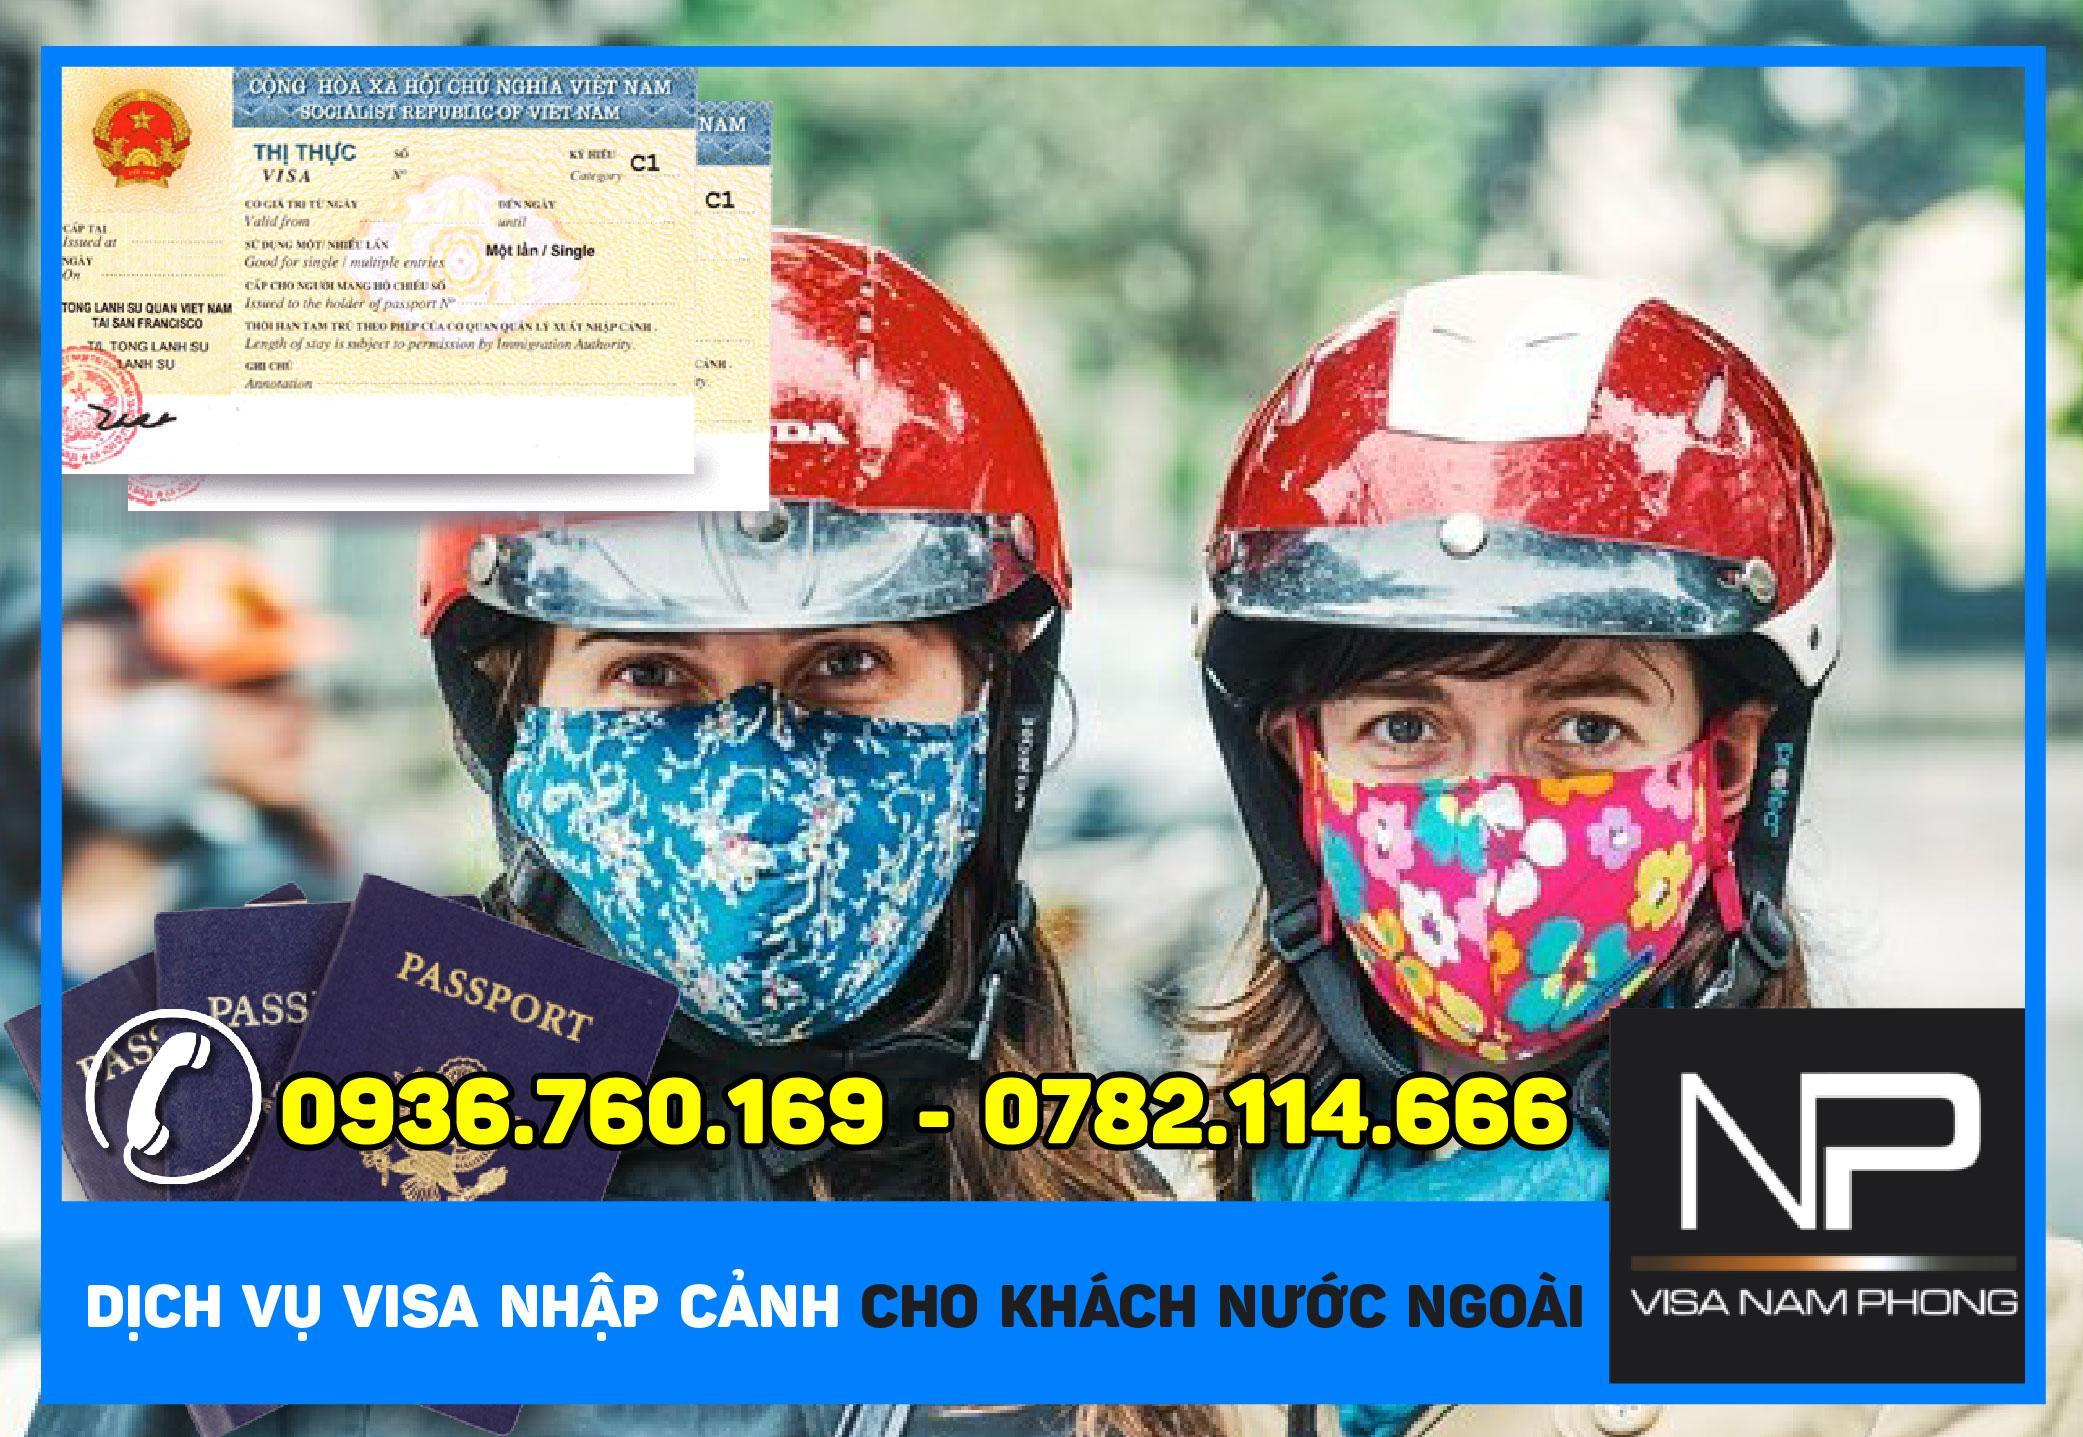 Dịch vụ visa nhập cảnh cho khách nước ngoài tại Hải Phòng